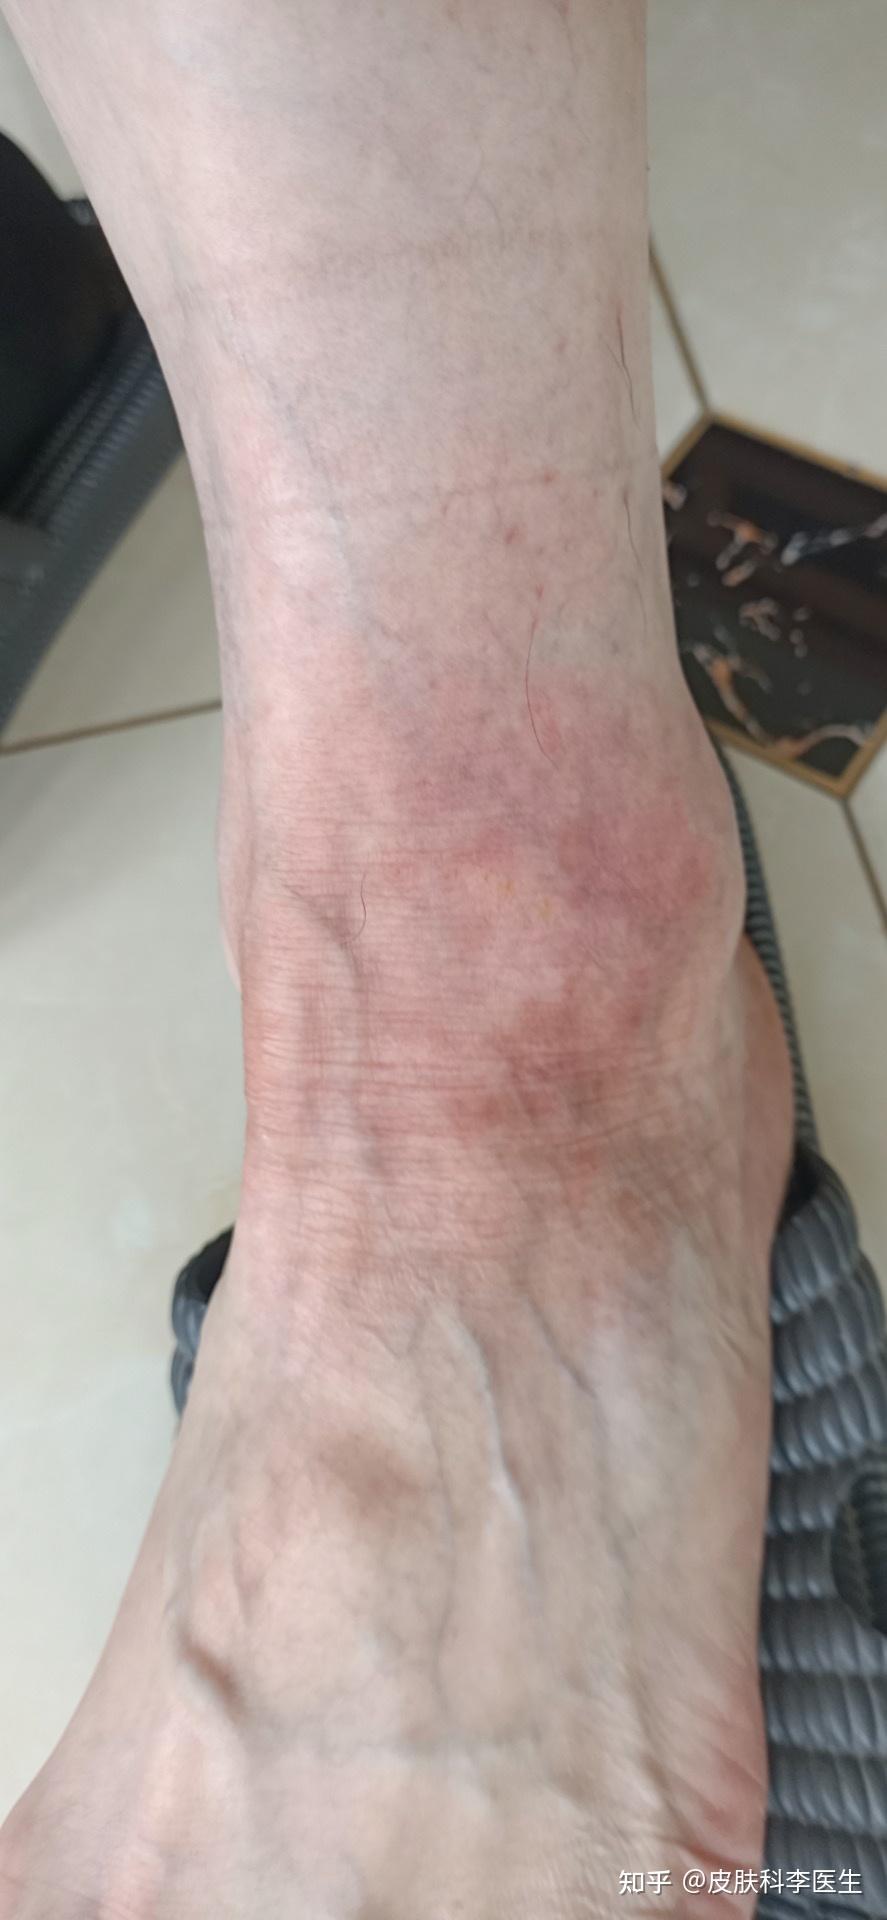 某男 57岁 江苏患者,左脚踝部慢性湿疹并神经皮炎,苔藓样改变,15余年